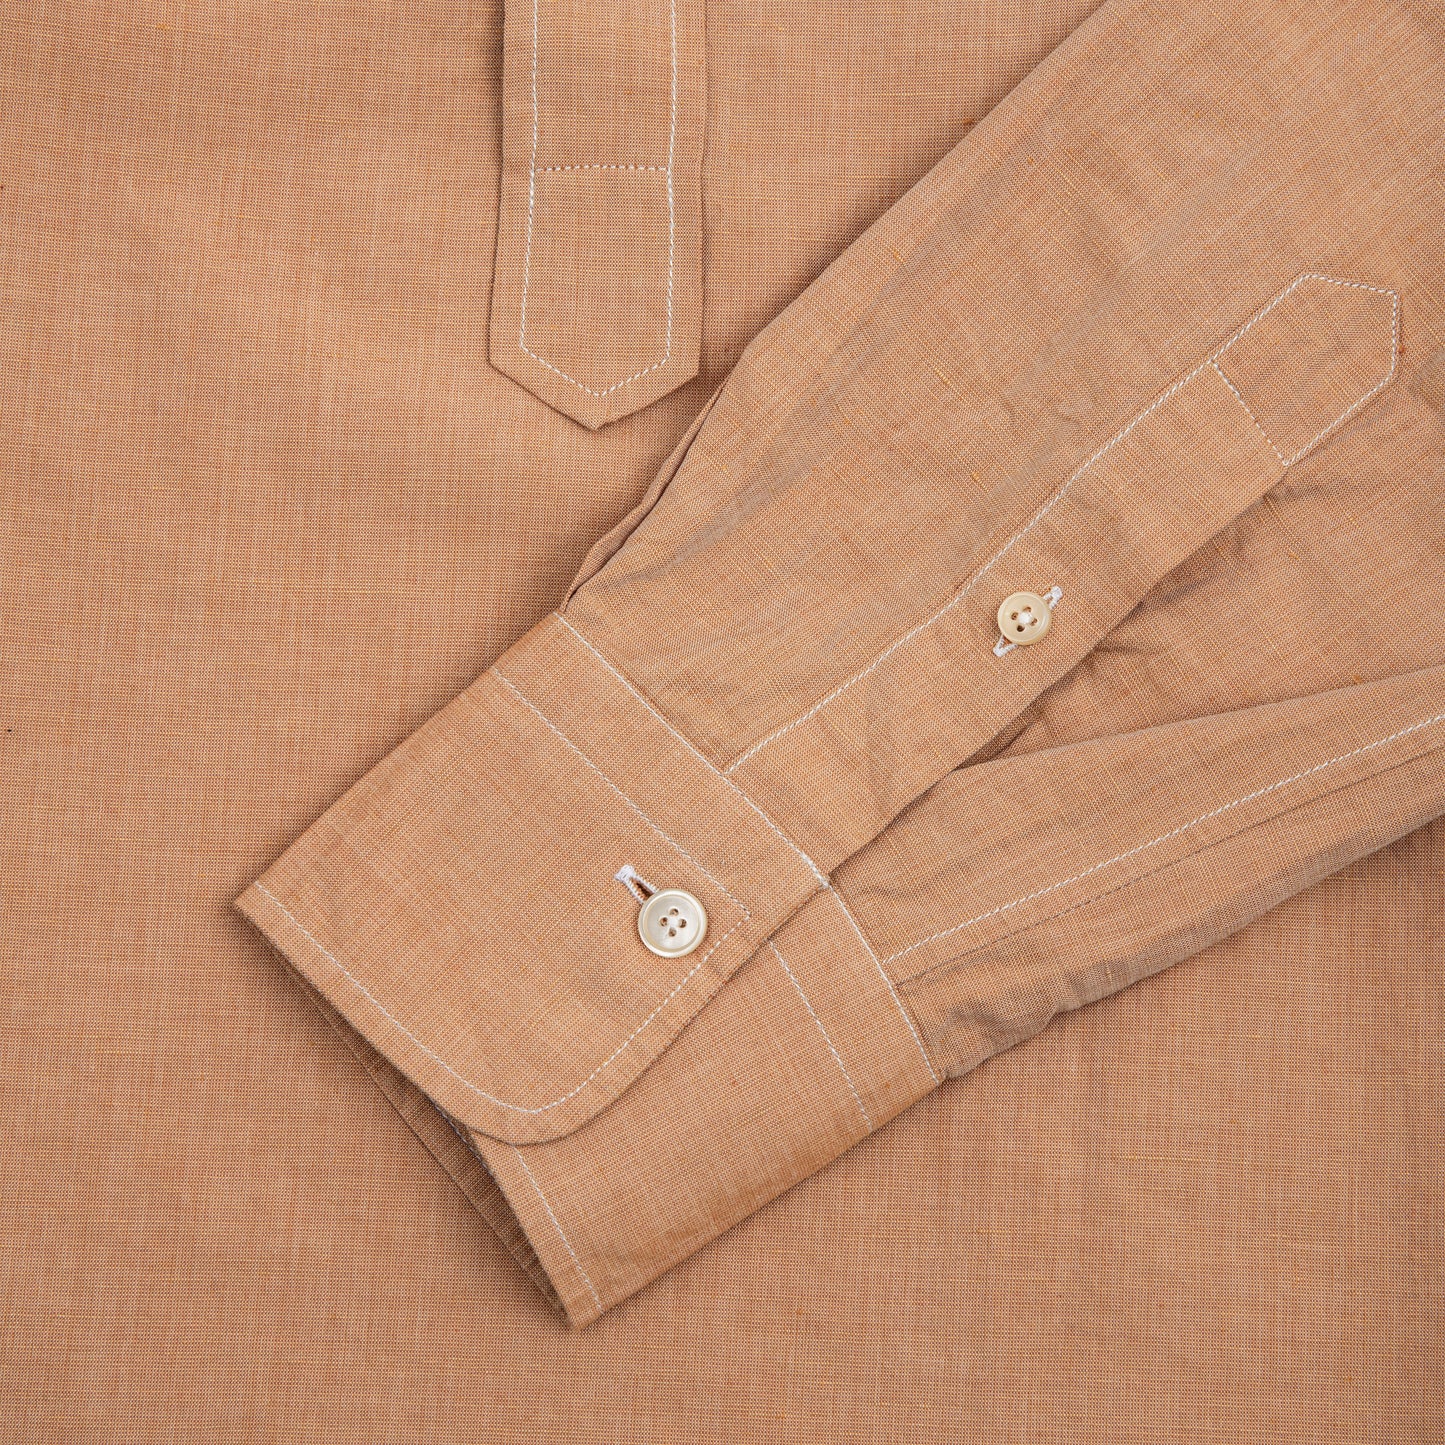 Pop Over Cotton Linen Shirt Brown